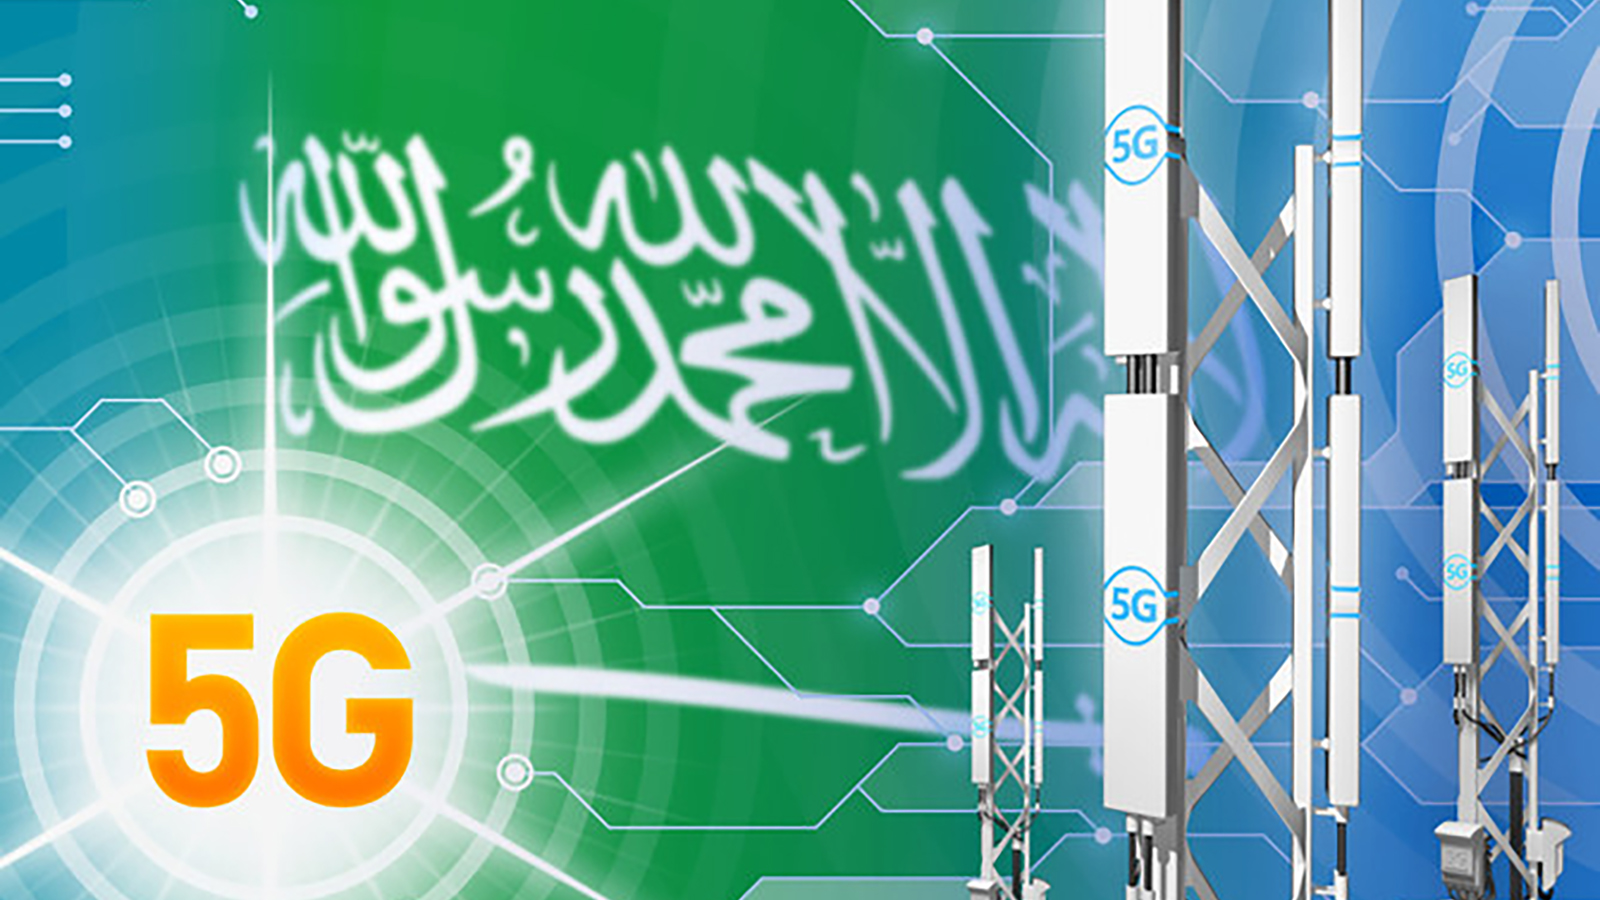 عربستان سعودی از اینترنت 5G با انتشار صفر کربن برای اولین بار رونمایی کرد!